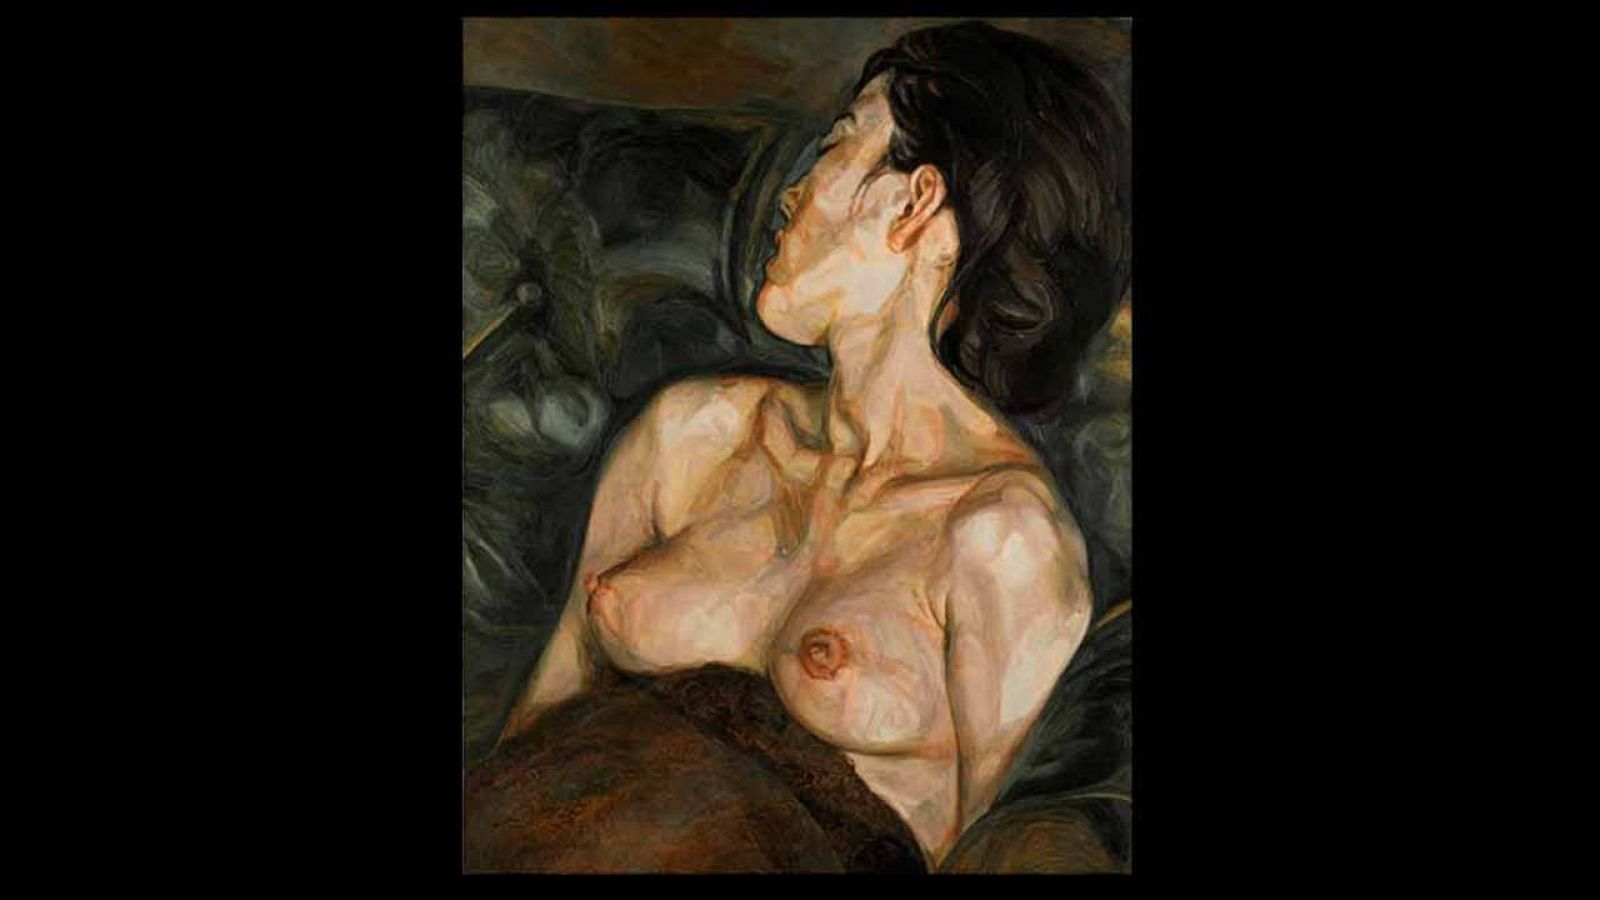 El retrato de Lucian Freud, Pregnant Girl, en el que el pintor capturó una imagen de su amante de 17 años embarazada.